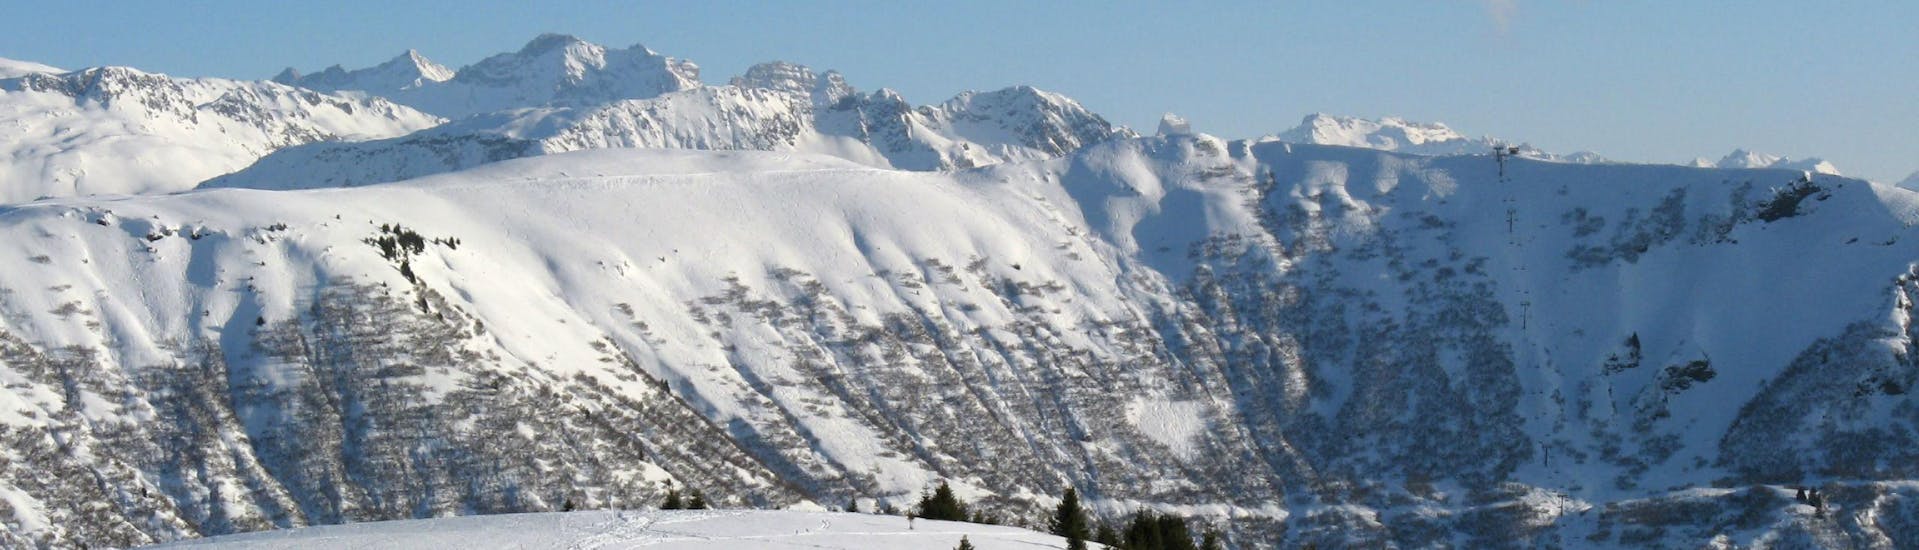 Une vue panoramique des pistes de ski de Praz sur Arly, une station de ski française nichée entre les majestueux sommets du département de la Savoie, où les écoles de ski locales offrent un large choix de cours de ski.